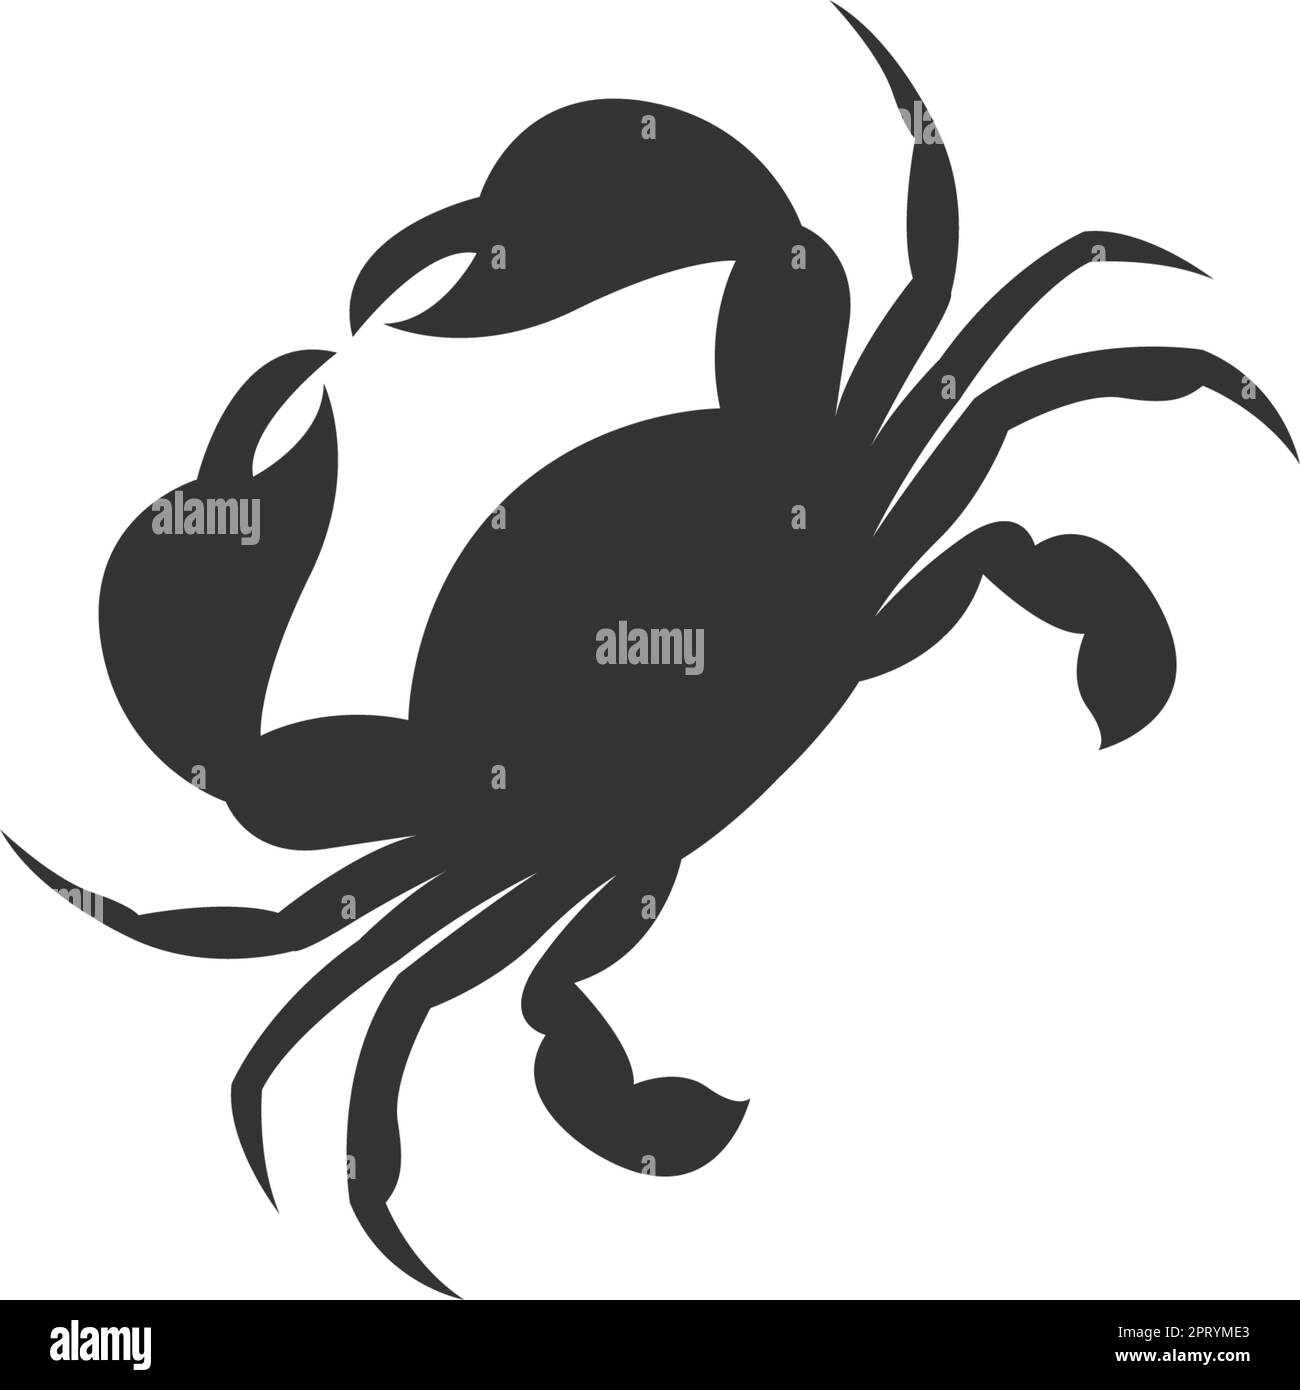 Disegno dell'icona del logo Crab Illustrazione Vettoriale